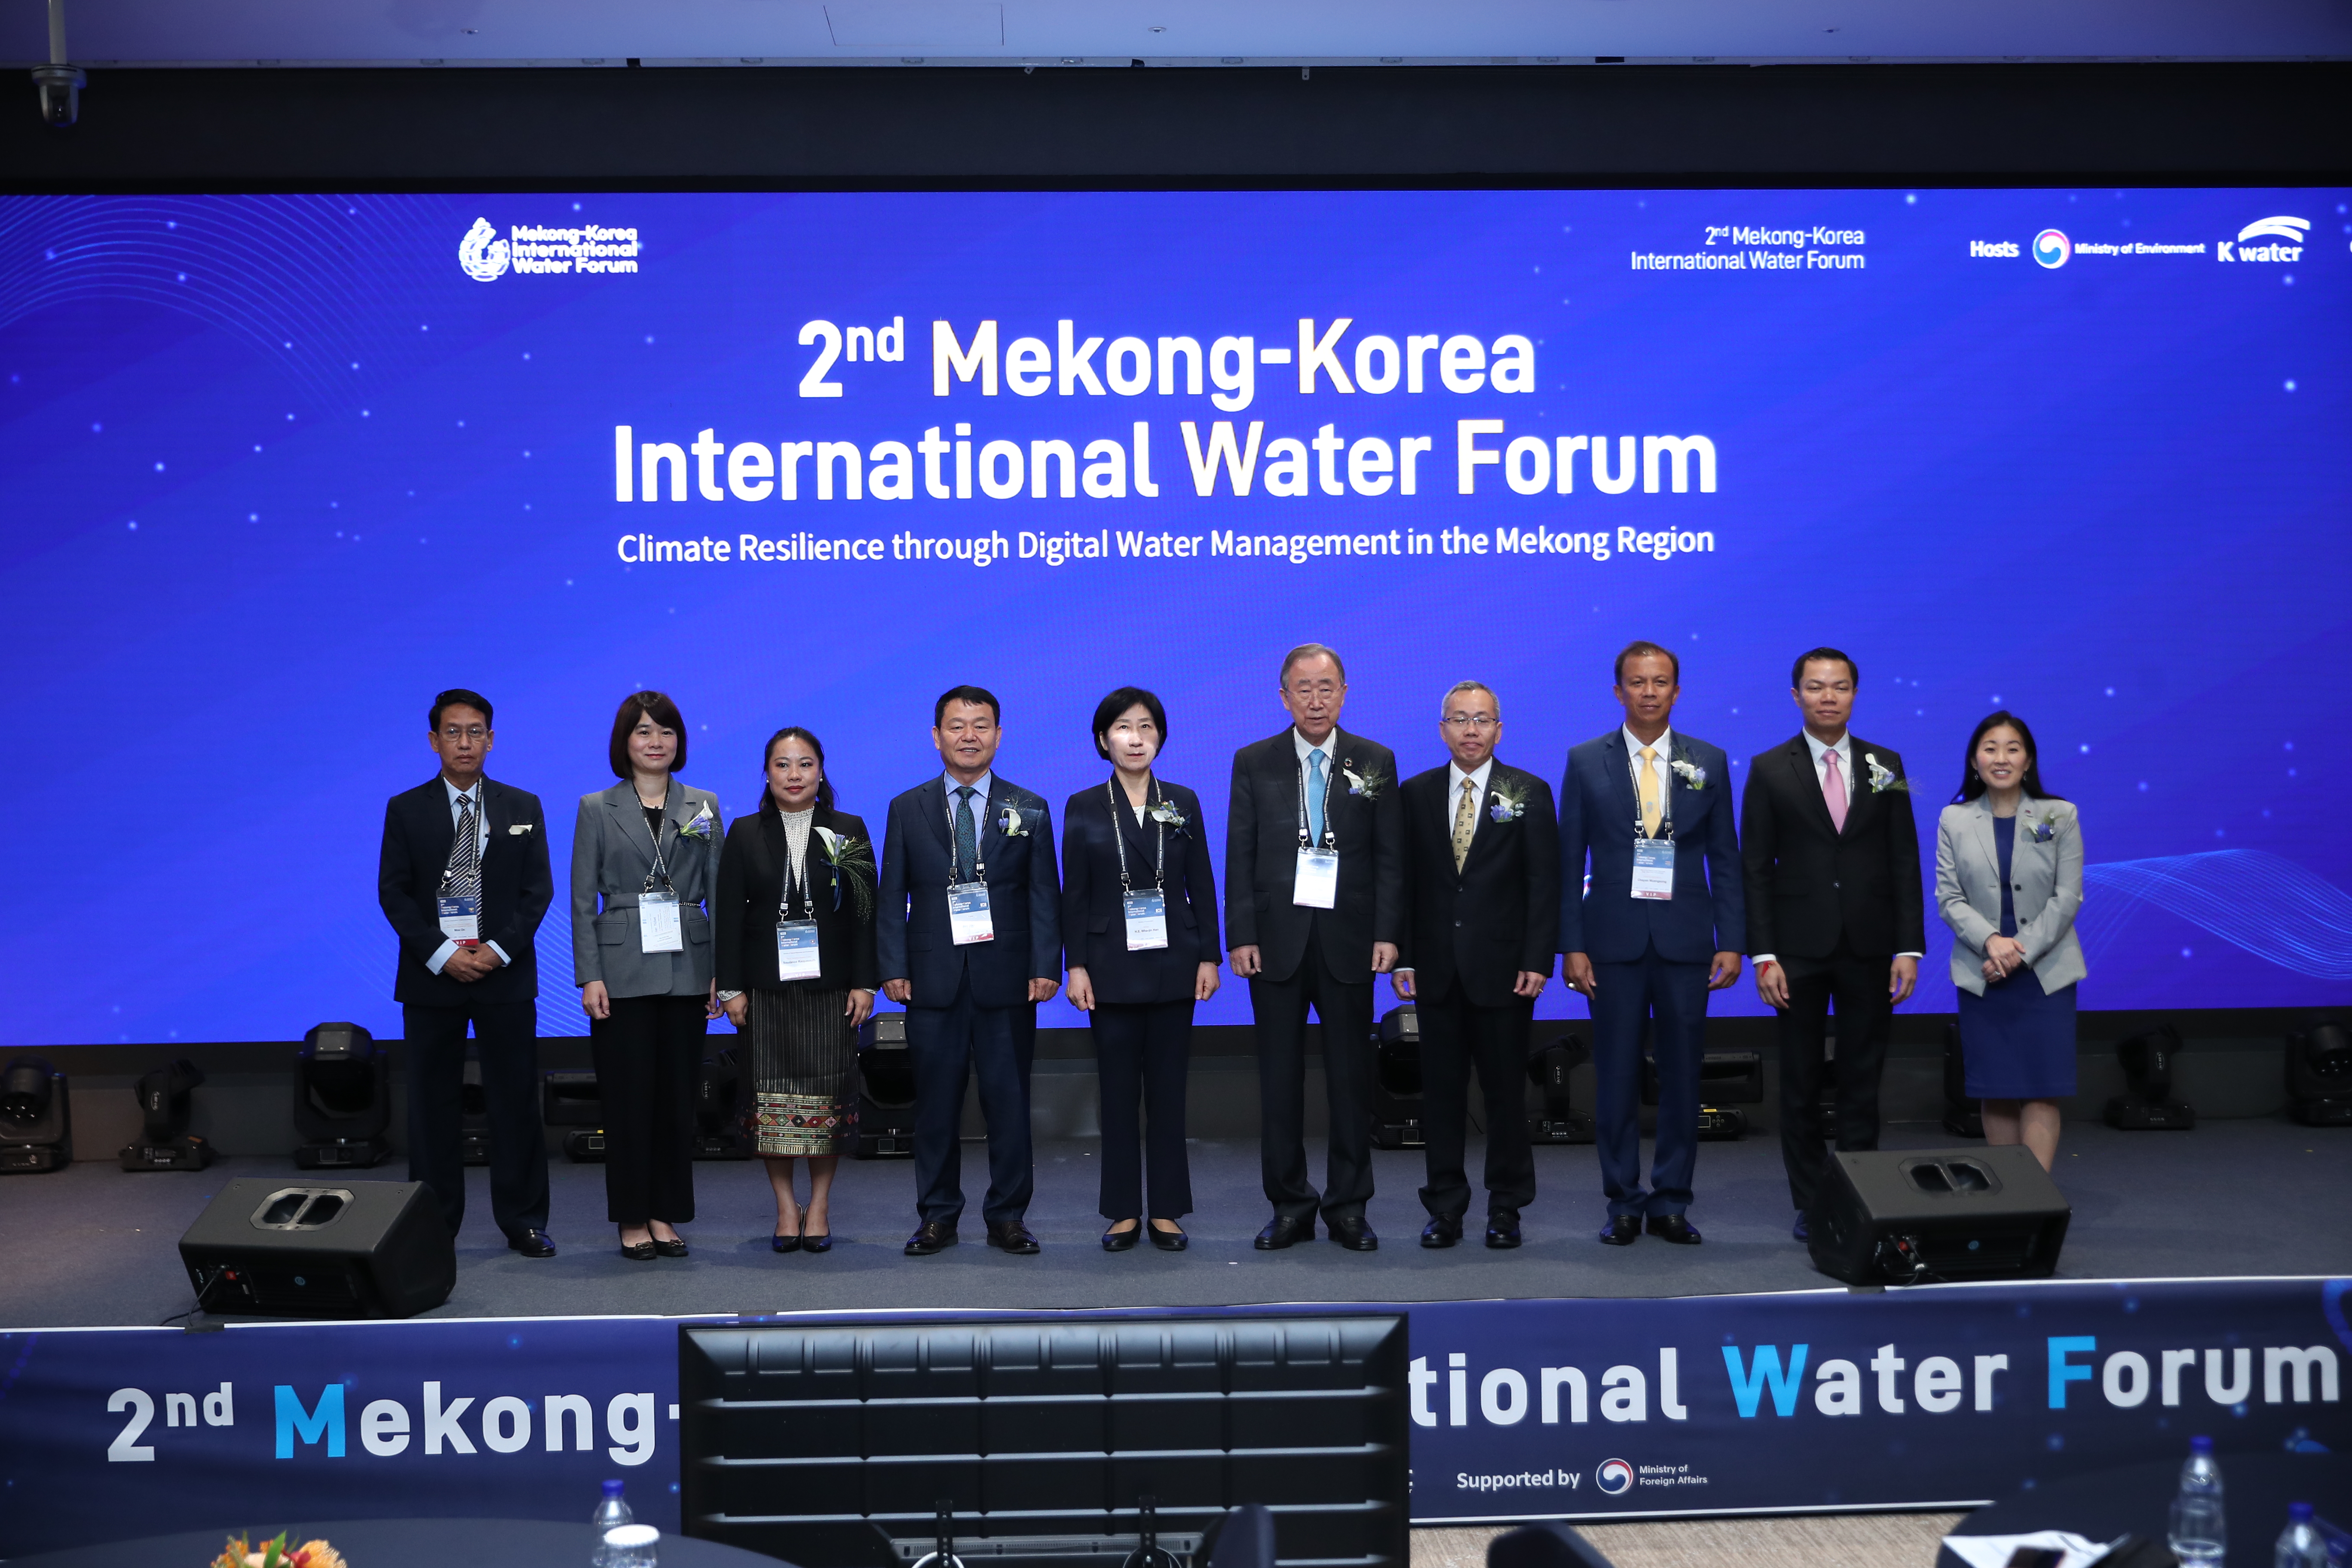 The 2nd Mekong-Korea International Water Forum